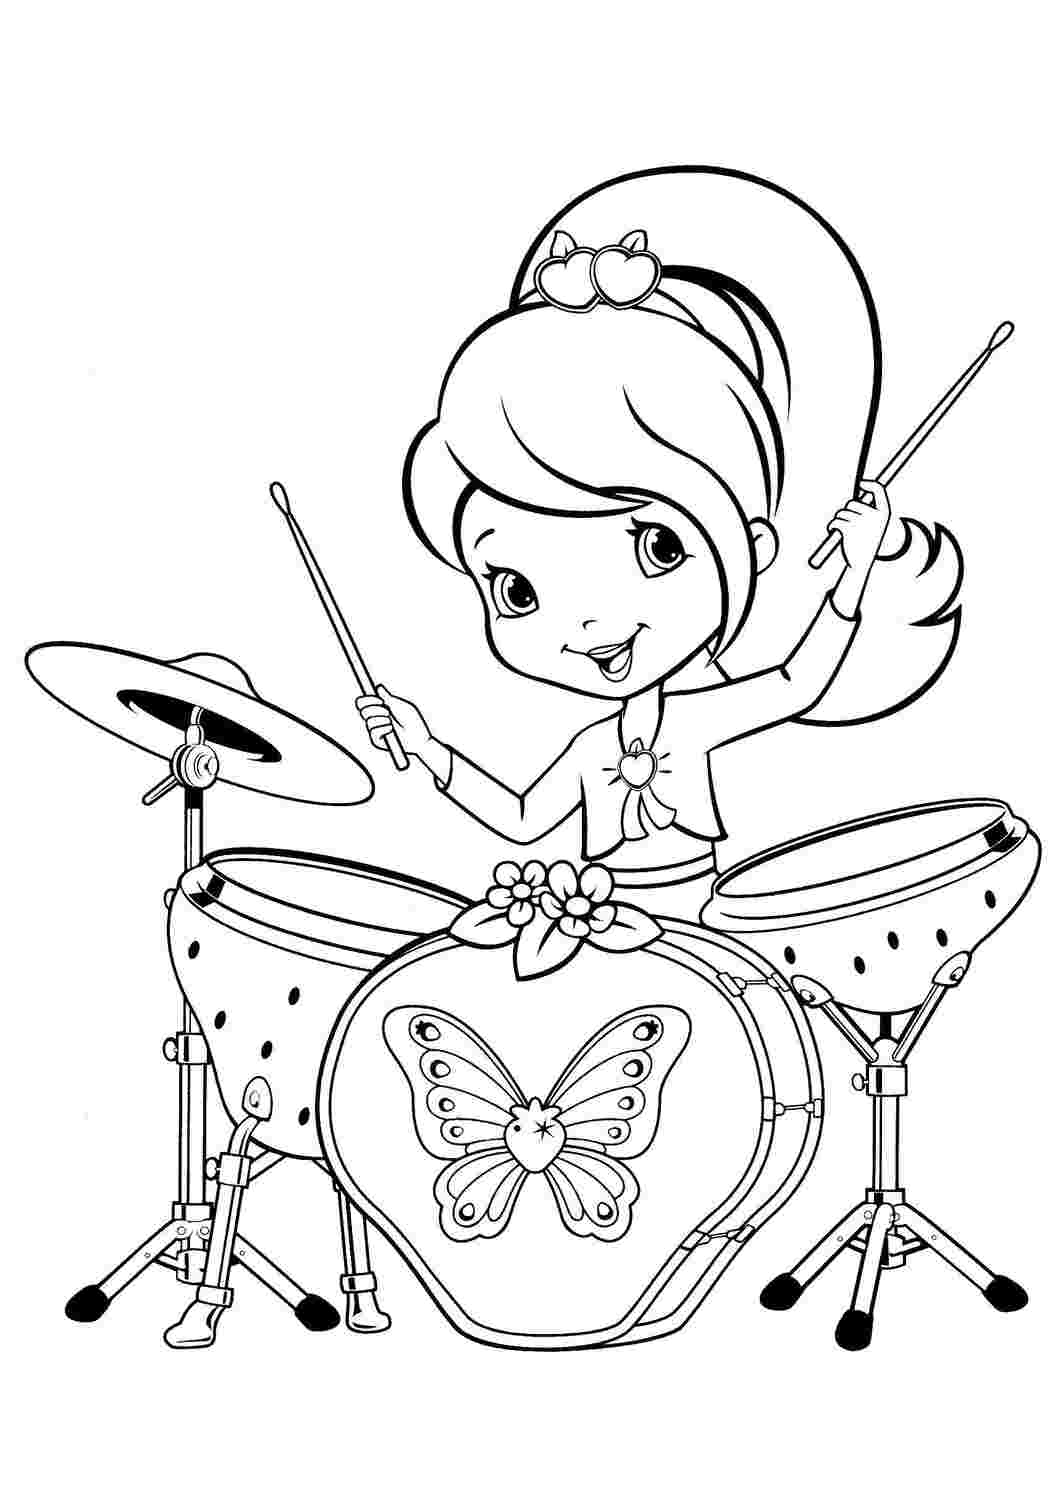 Раскраски Шарлотта земляничка играет на барабанах шарлотта земляничка мультики шарлотта, клубничка